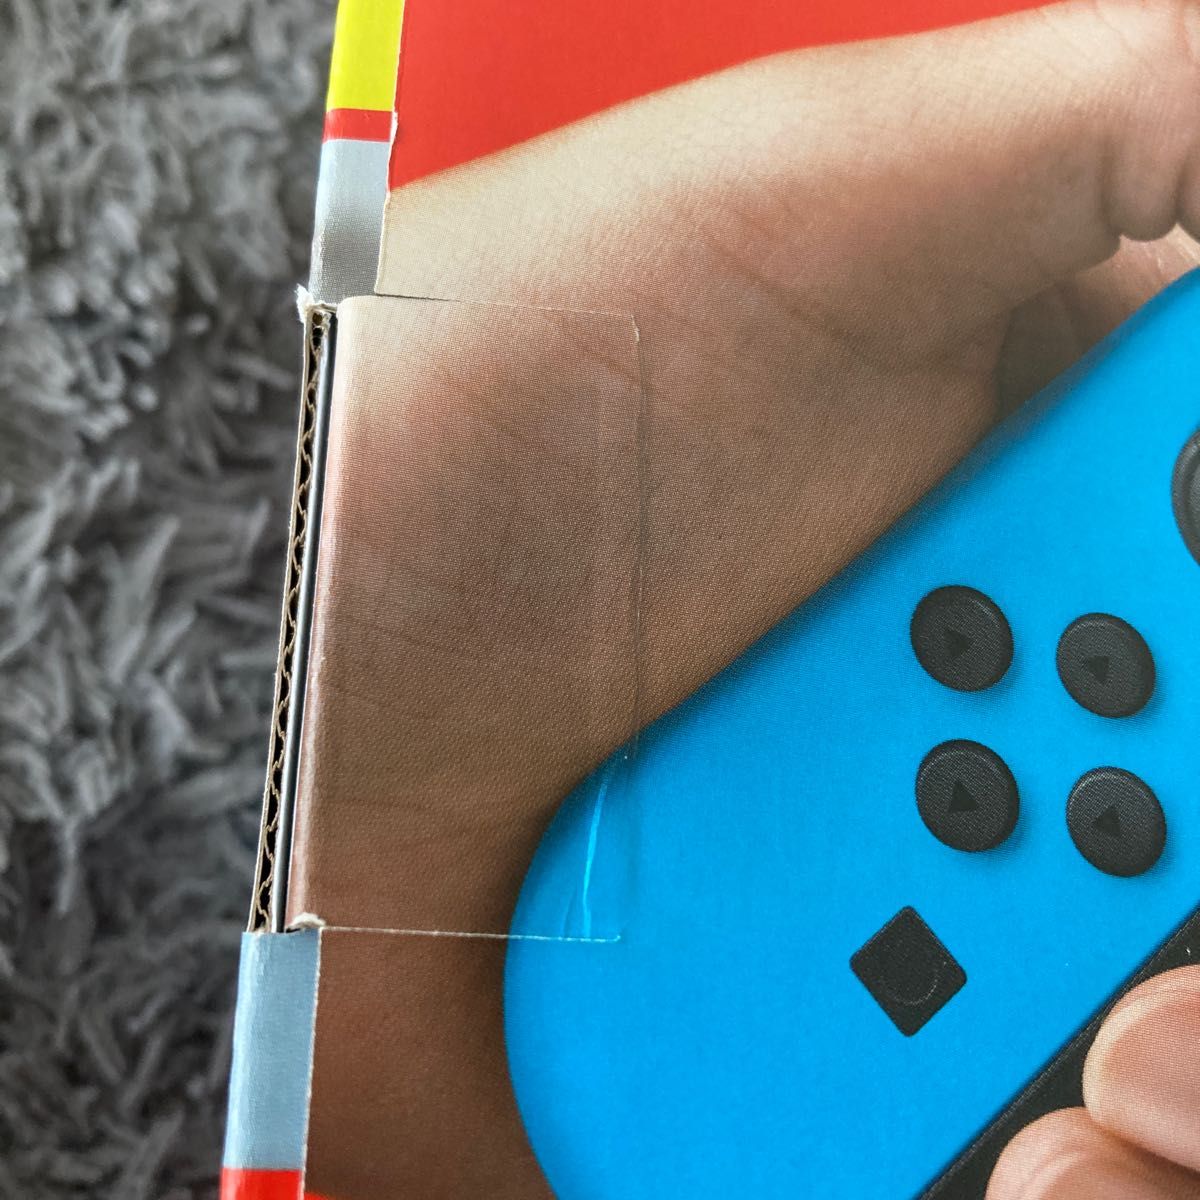 新品未開封 Nintendo Switch ネオンブルー レッド 新パッケージ 小型 ニンテンドースイッチ本体